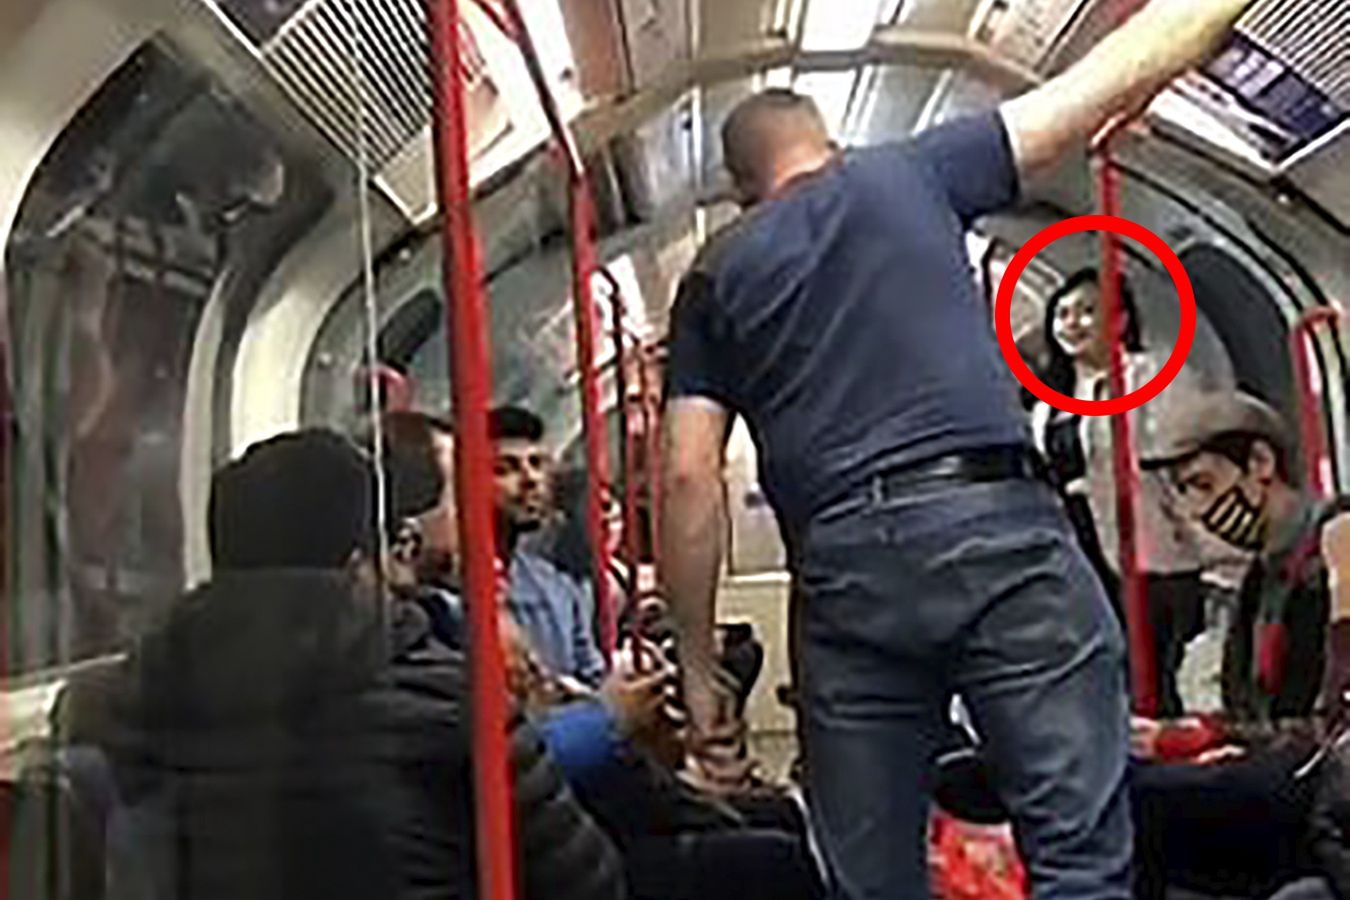 Brutalny atak w Londynie: "Myślisz, że pomoże ci fakt, że jesteś kobietą?"